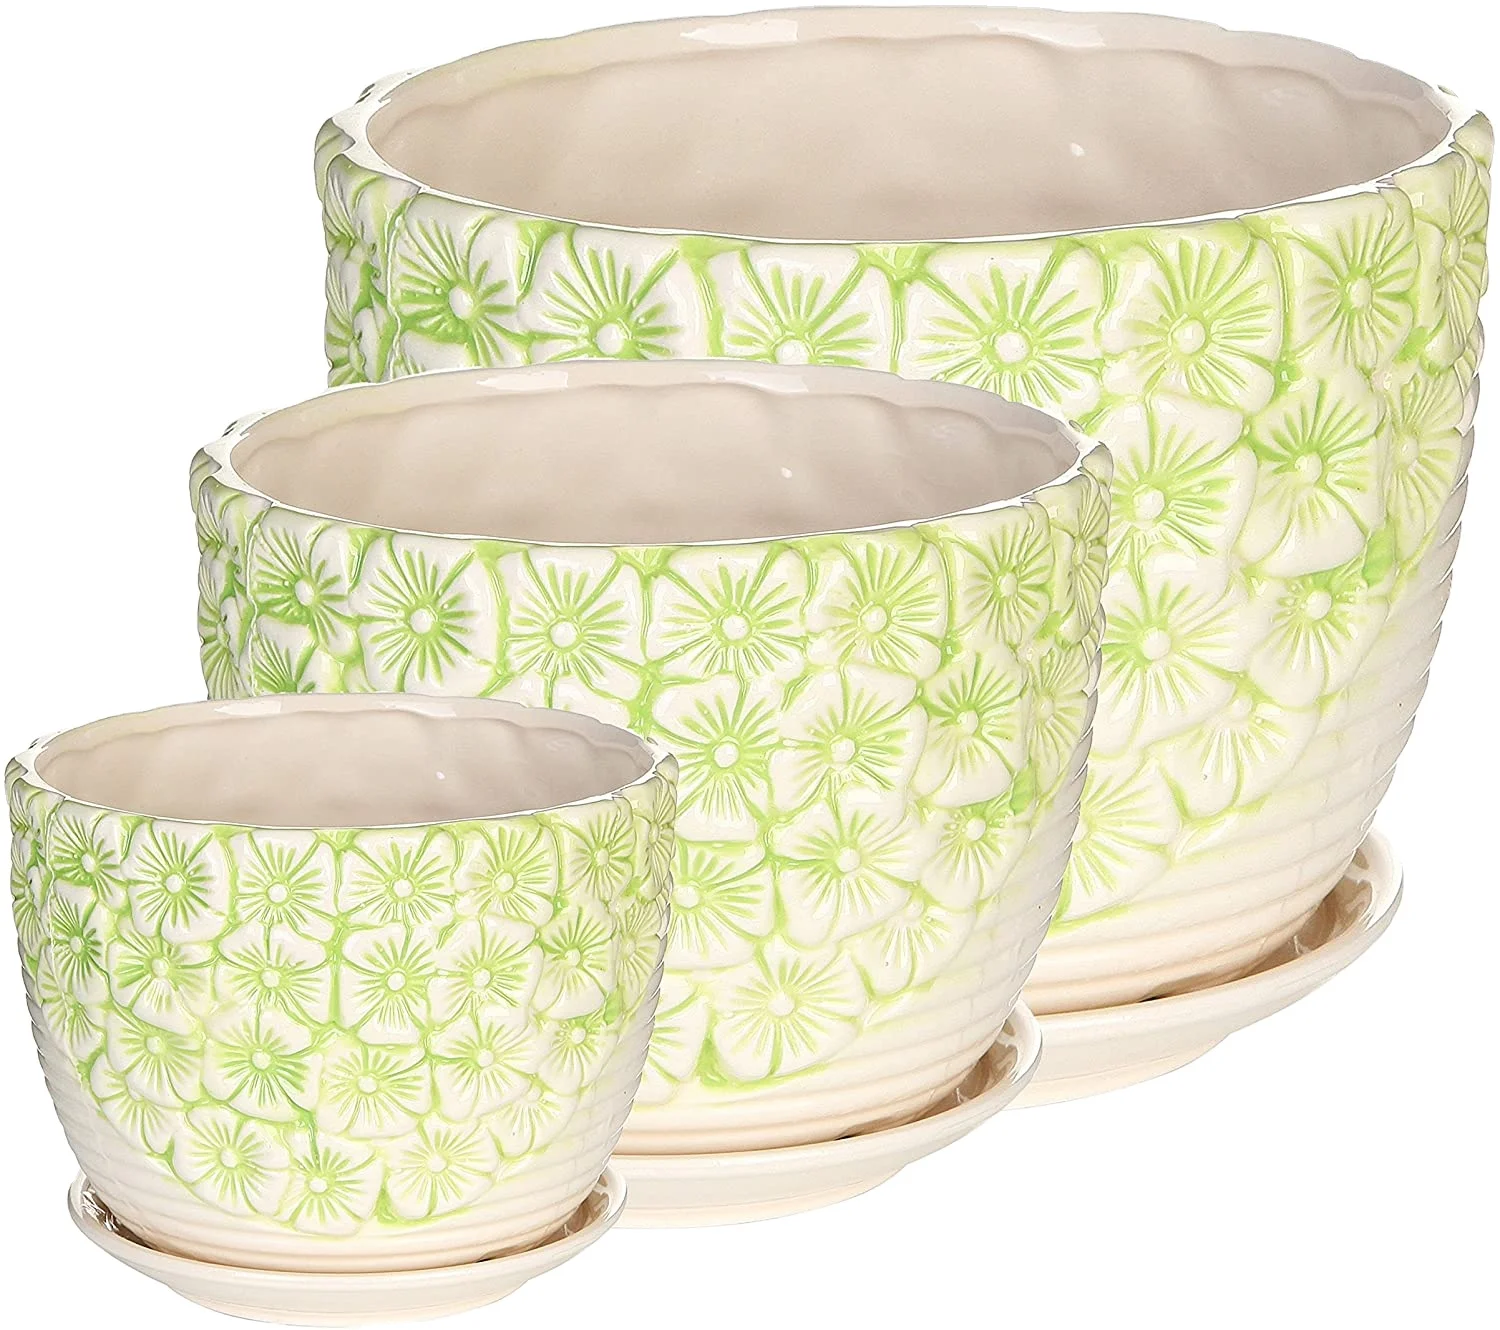 Green & White Embossed Flower Design Nesting Ceramic Planter Pots Set of 3 